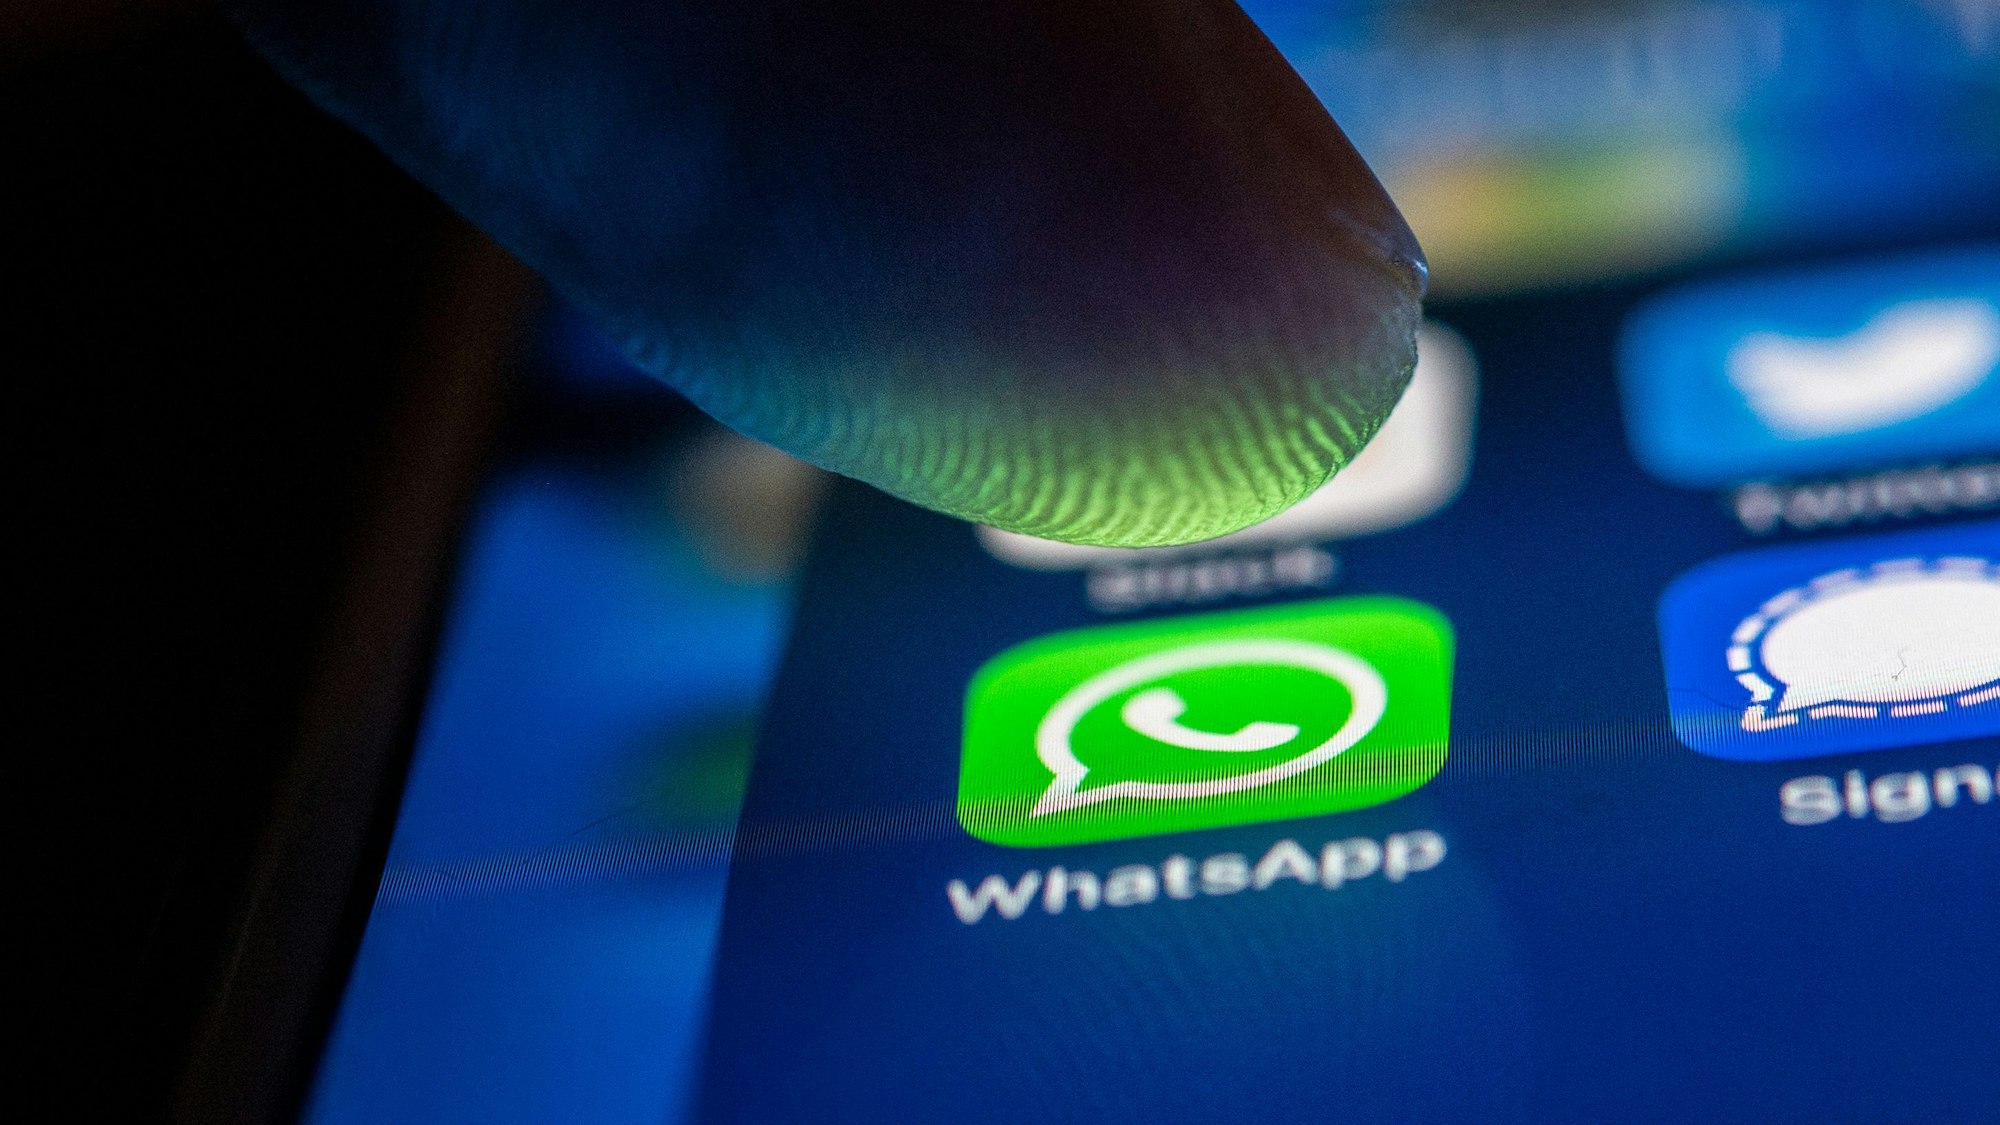 WhatsApp hat eine wichtige Neuerung eingeführt. Unser Symbolfoto zeigt das WhatsApp-Symbol auf einem Handydisplay.